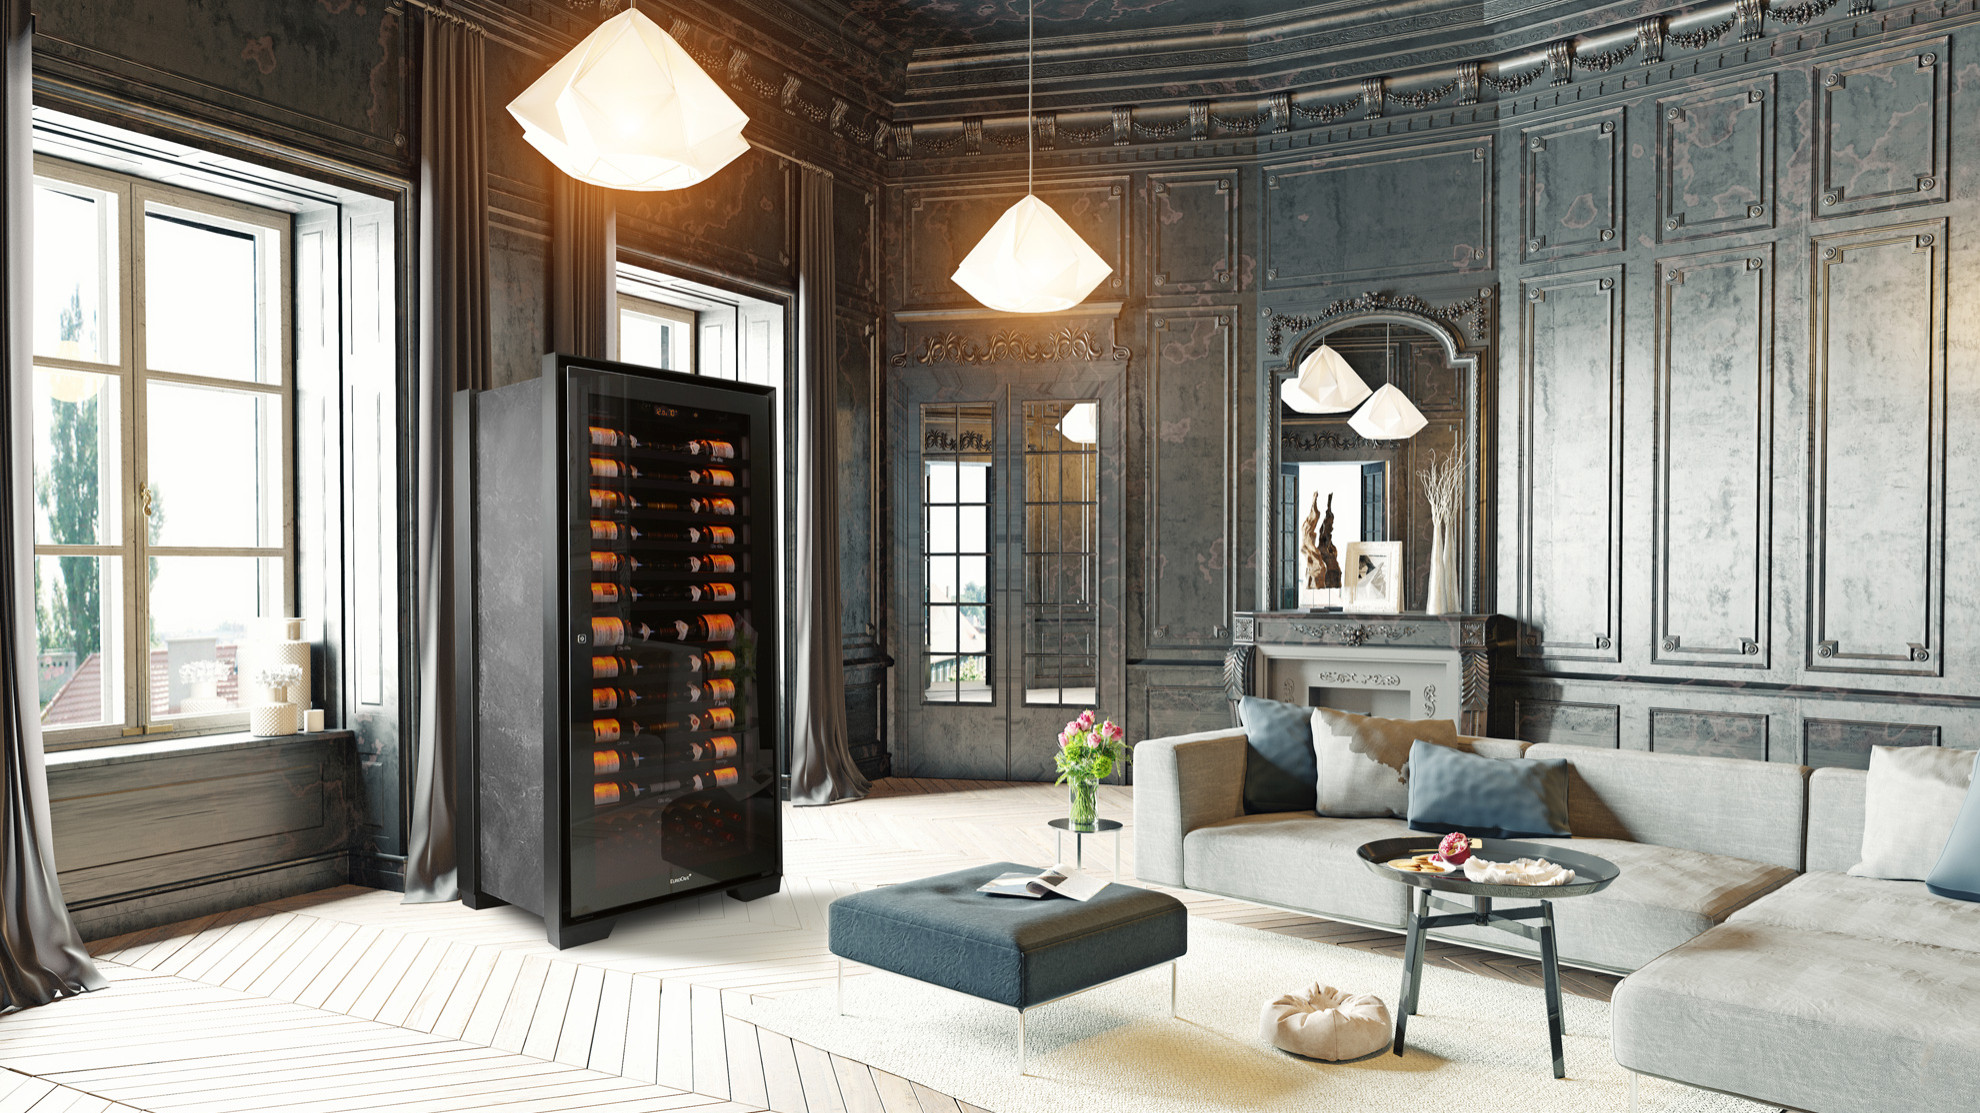 collection-royale-cave-salon-luxe-haut-de-gamme-marbre-cheminee-vin-banniere.jpg